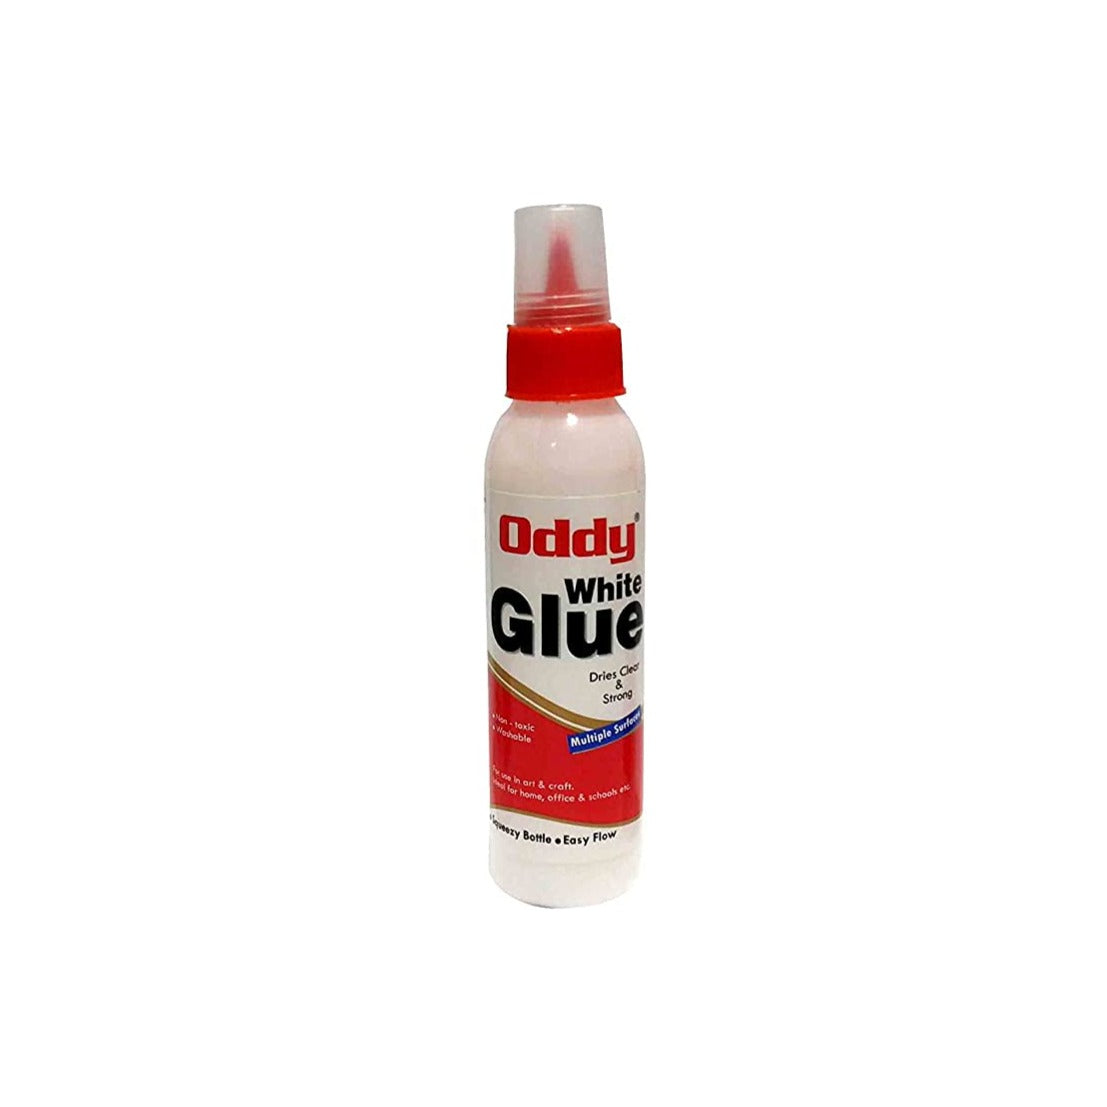 Oddy: White Glue 100 Gram Craft Glue